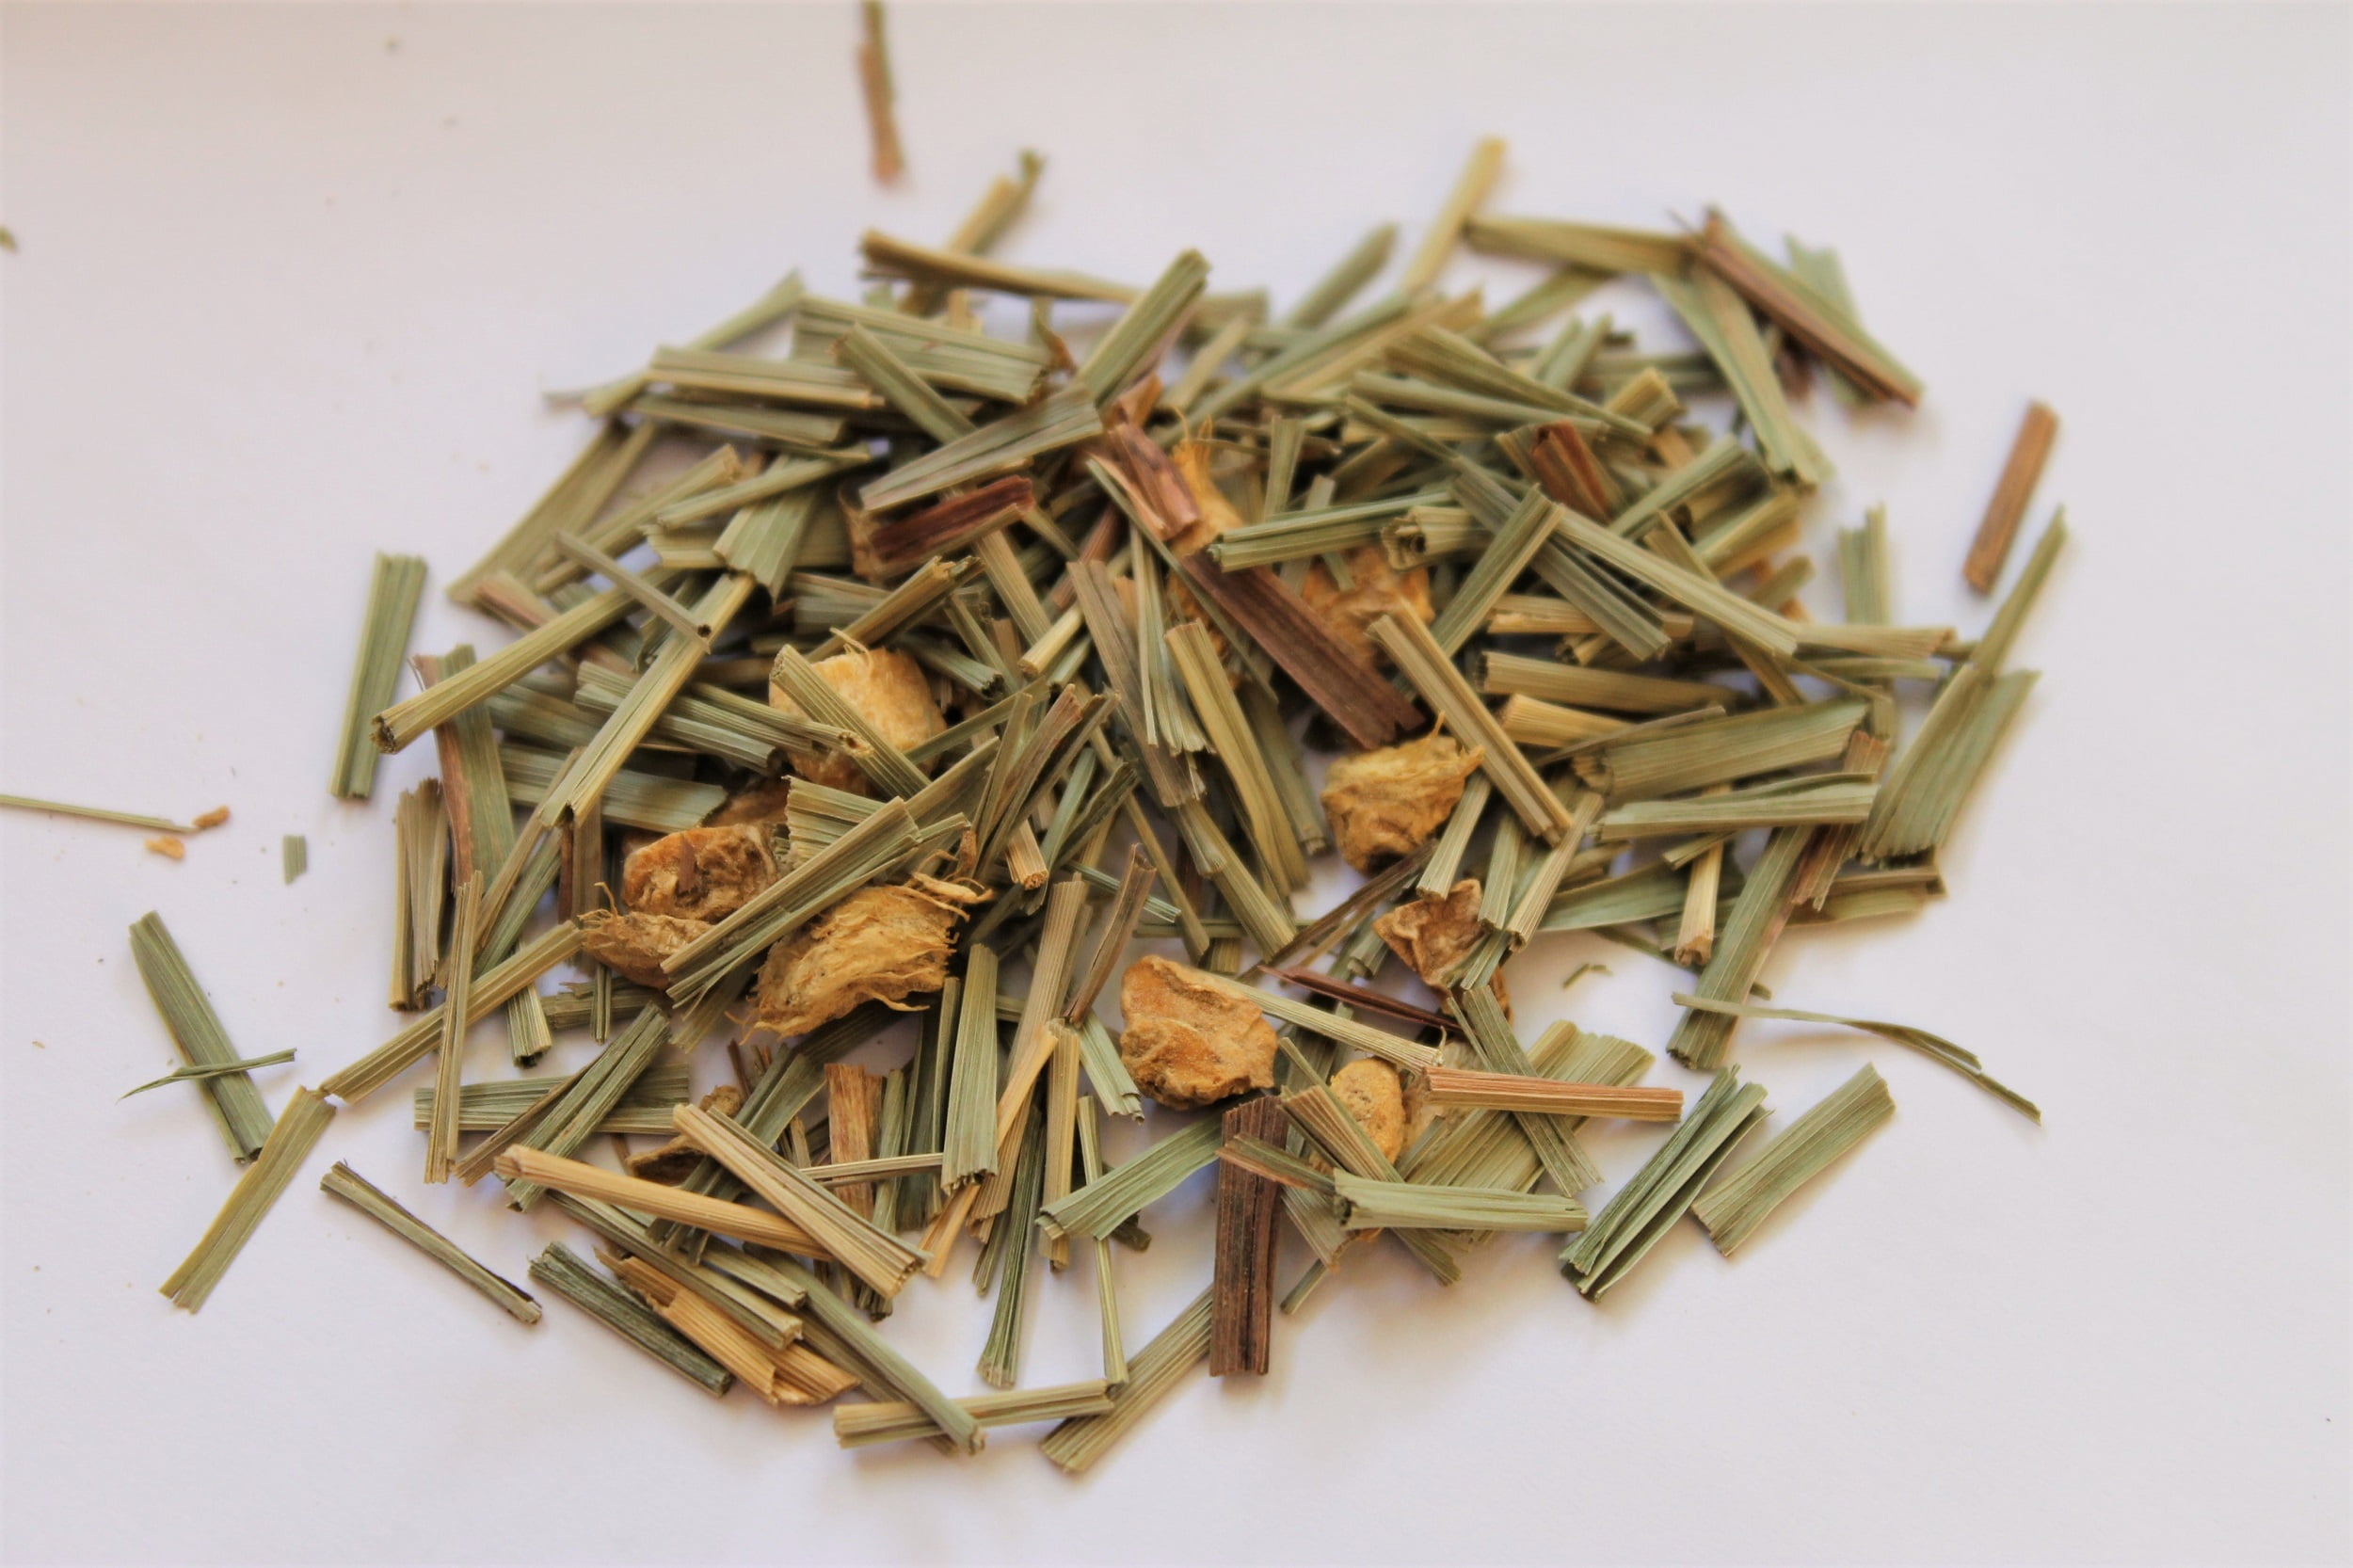 lemongrass ginger tea